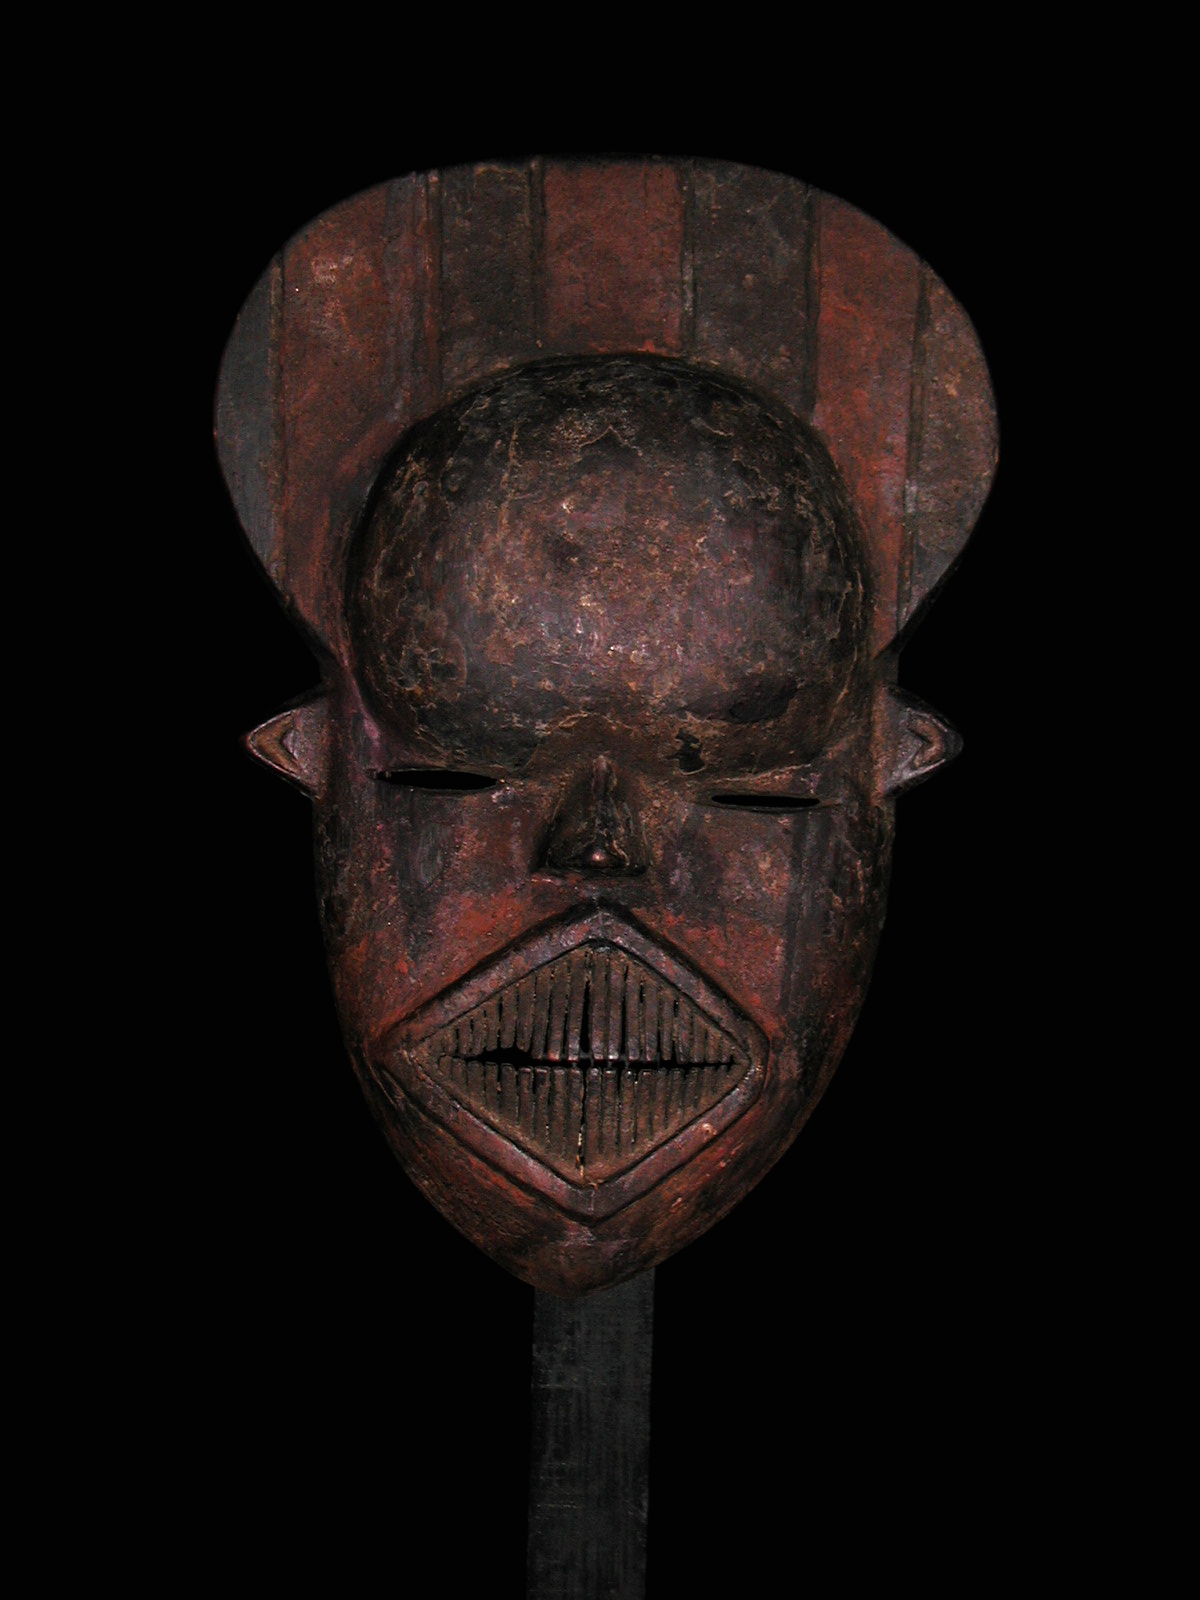 Kanioka (masque), d`afrique : Rép.démoncratique du Congo., statuette Kanioka (masque), masque ancien africain Kanioka (masque), art du Rép.démoncratique du Congo. - Art Africain, collection privées Belgique. Statue africaine de la tribu des Kanioka (masque), provenant du Rép.démoncratique du Congo., 8/16 Les Bena Kanioka font partie des tribus balubaïsées.Leurs masques blanc, rouge et noir sont d